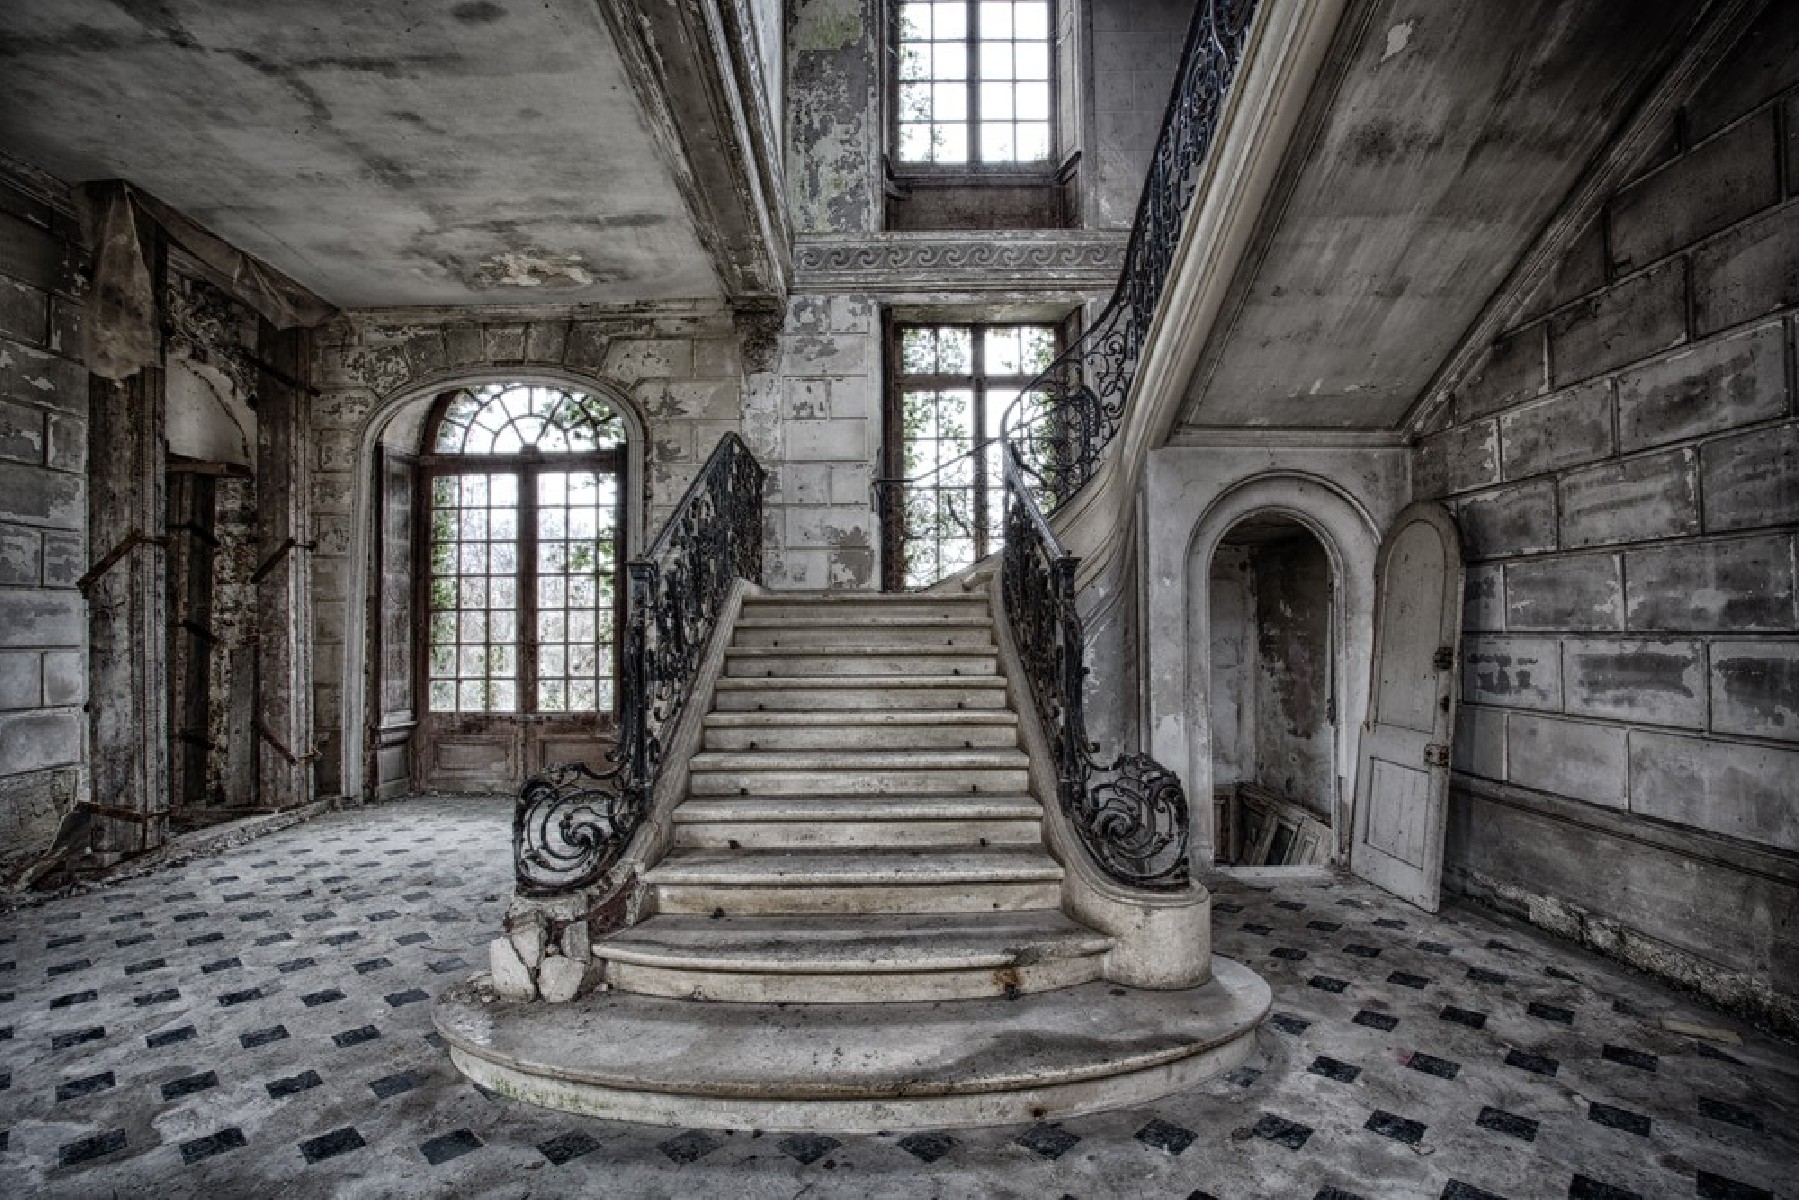 Stairway to the ghosts - Anne Marie van Malssen - Joseph & James